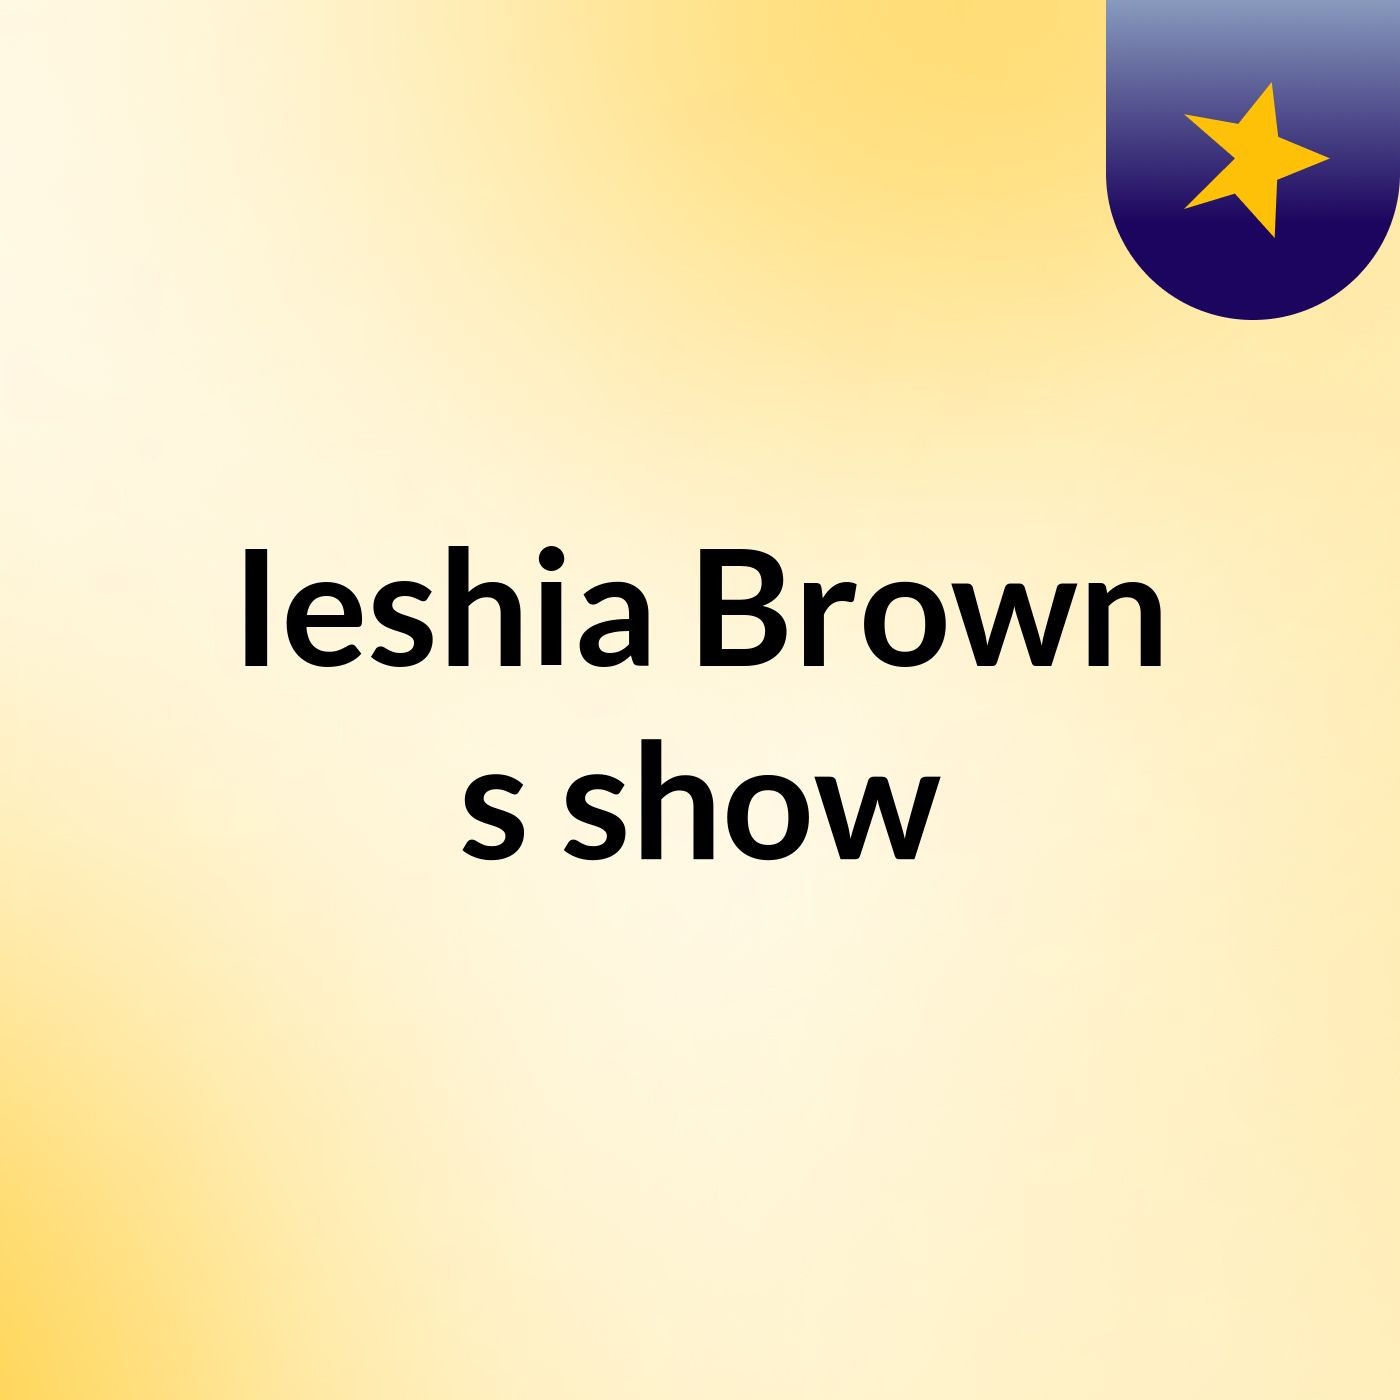 Episode 10 - Ieshia Brown's show